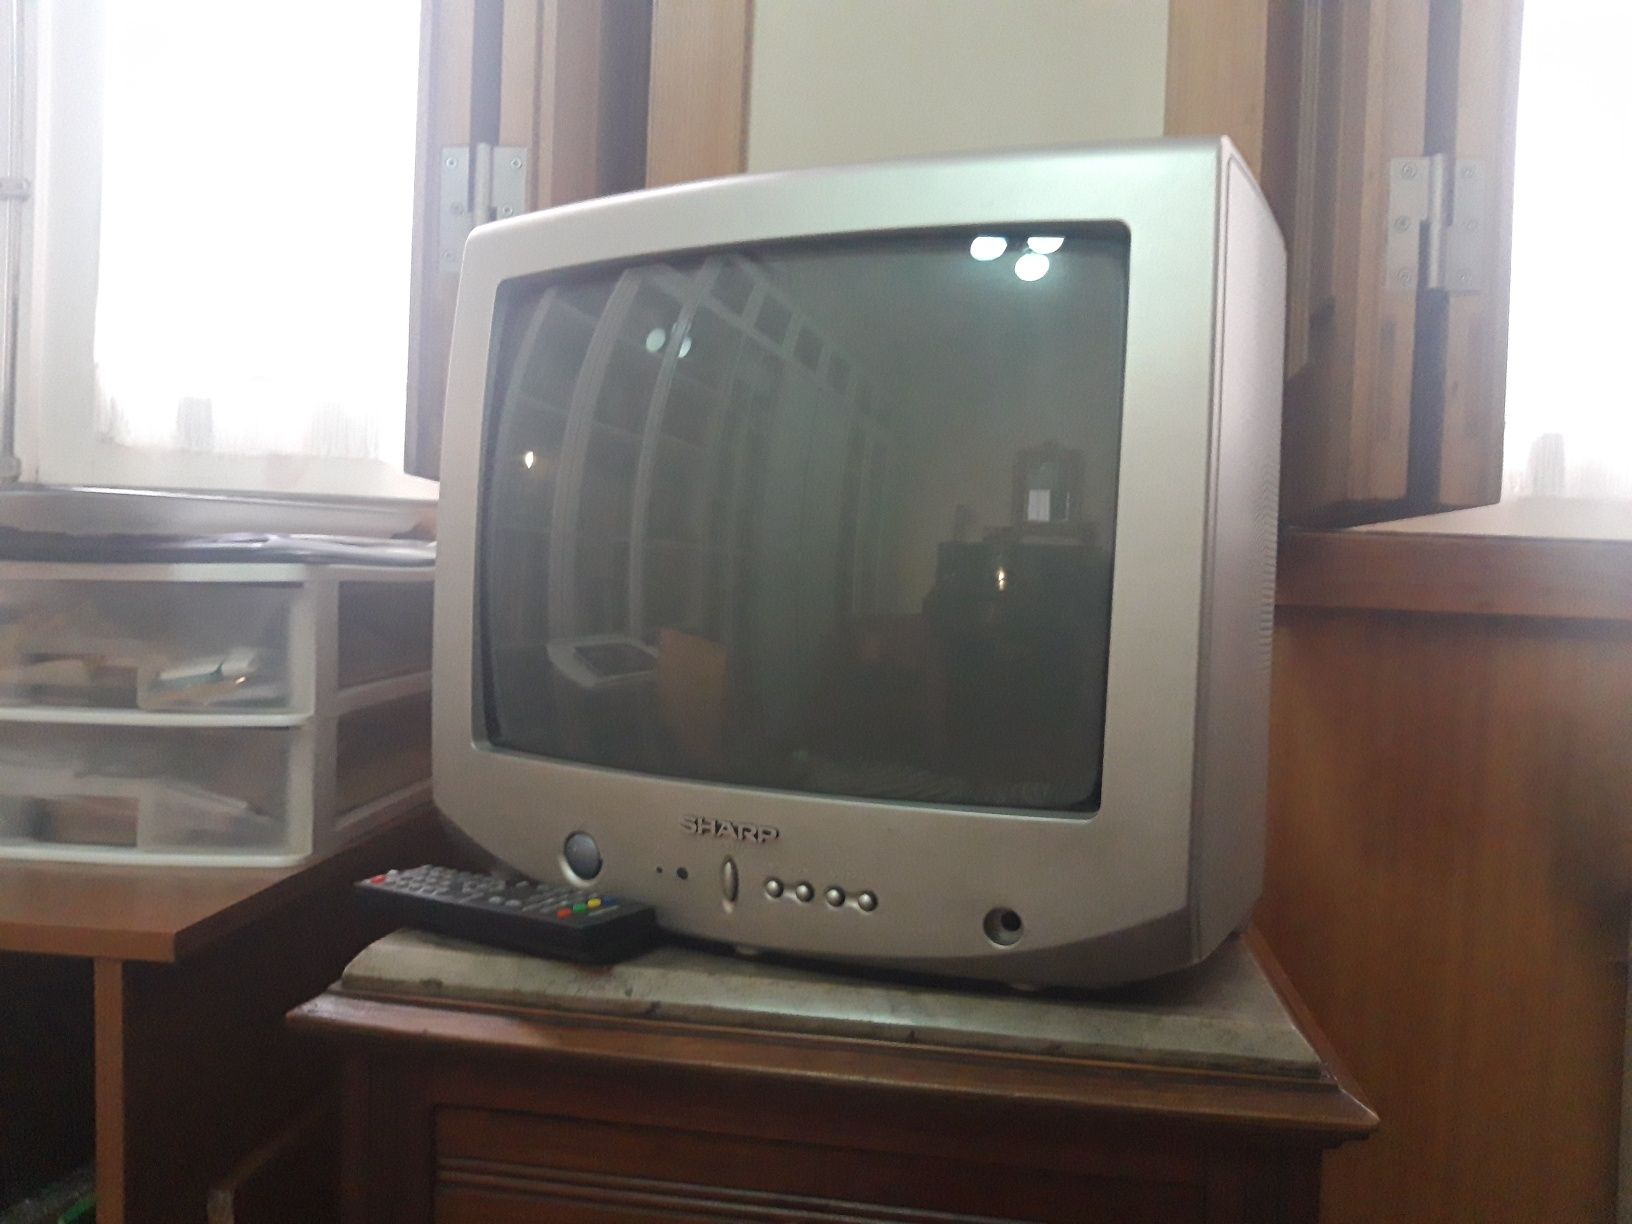 Televisão antiga da marca Sharp (cor: cinzento)